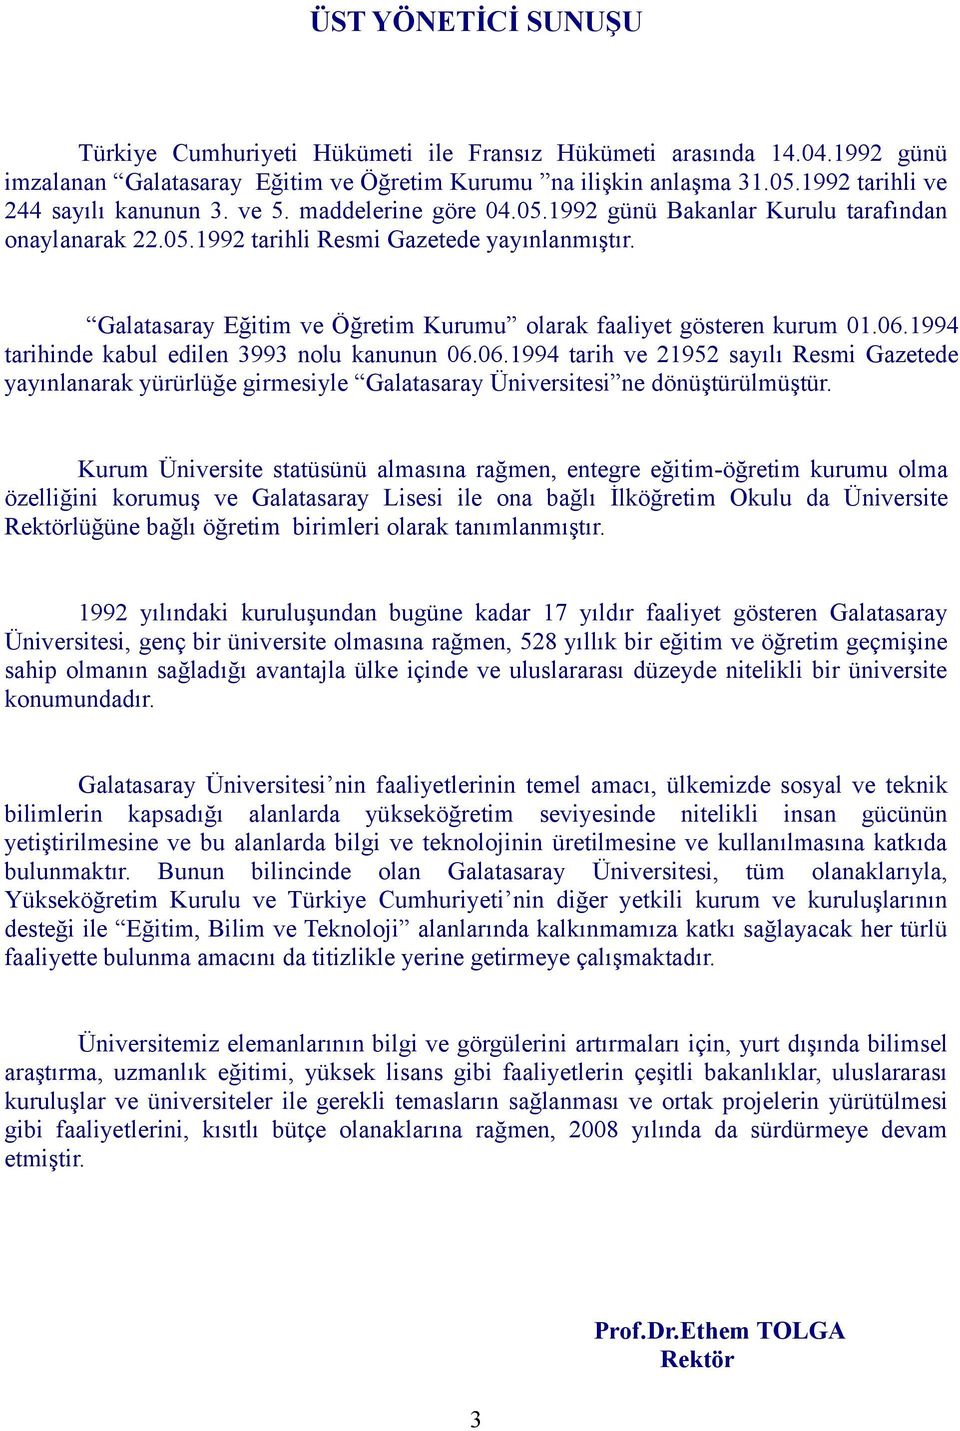 Galatasaray Eğitim ve Öğretim Kurumu olarak faaliyet gösteren kurum 01.06.1994 tarihinde kabul edilen 3993 nolu kanunun 06.06.1994 tarih ve 21952 sayılı Resmi Gazetede yayınlanarak yürürlüğe girmesiyle Galatasaray Üniversitesi ne dönüştürülmüştür.